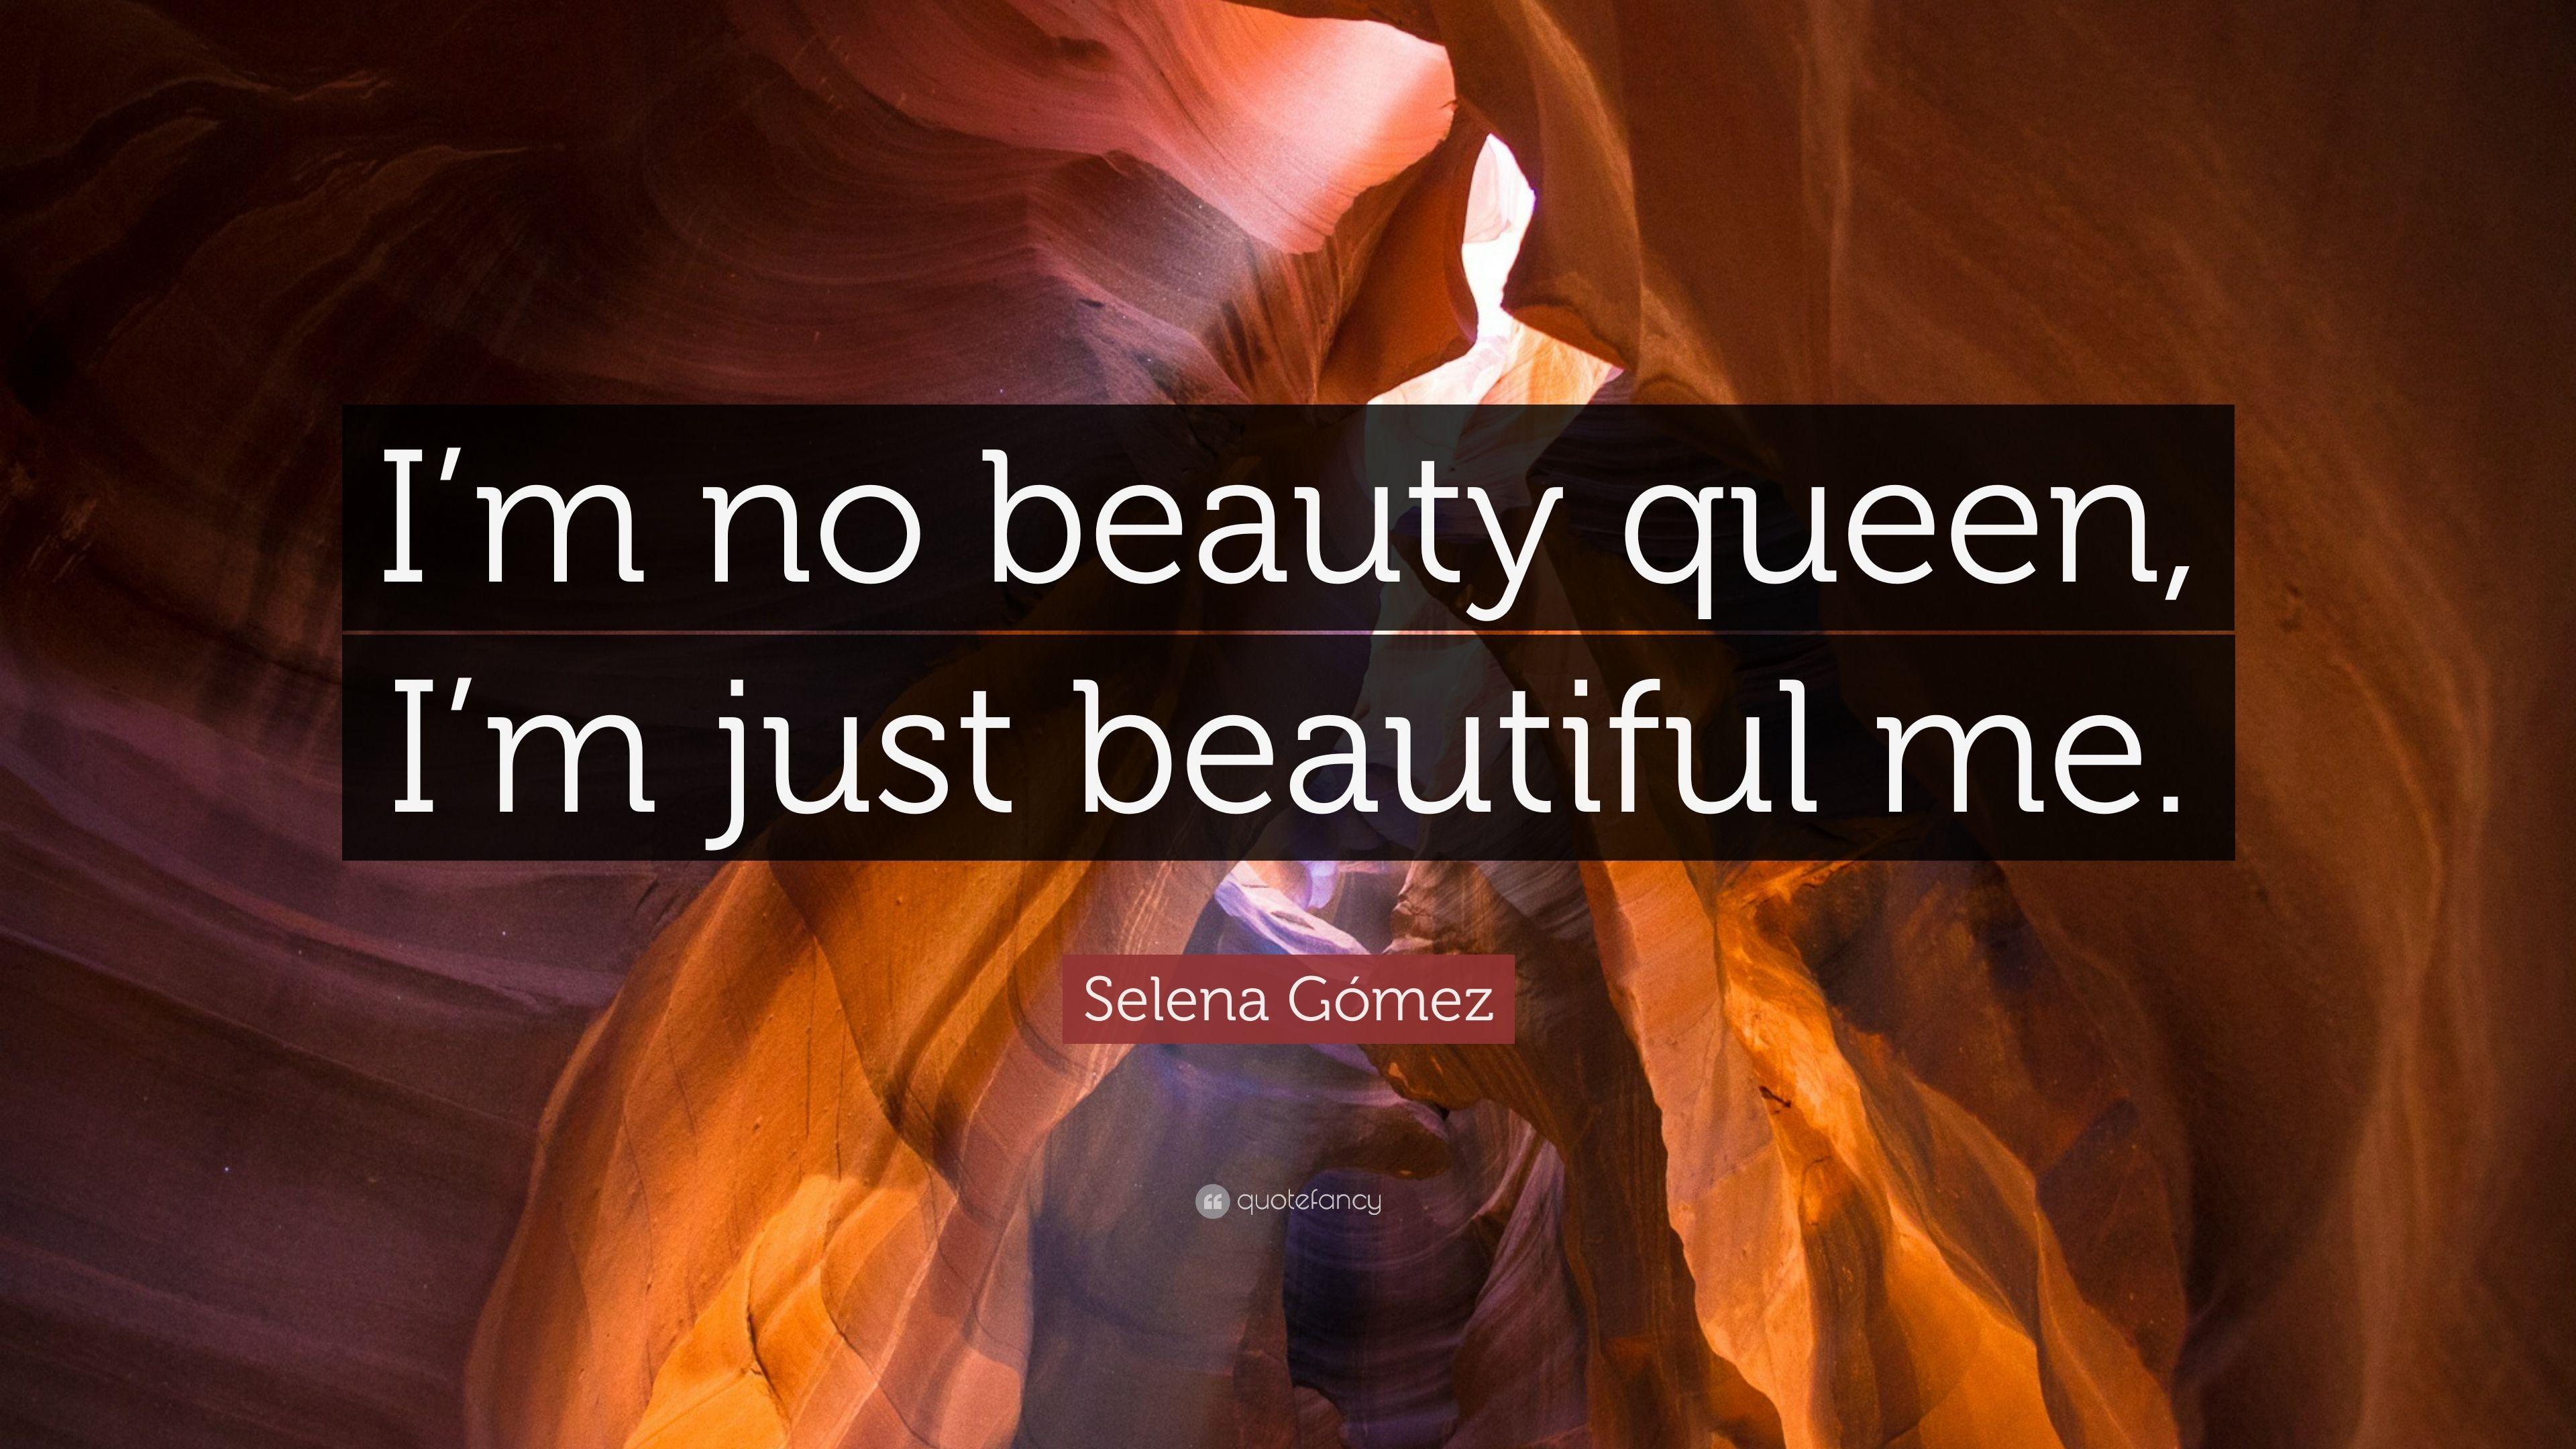 Selena Gómez Quote: “I'm no beauty queen, I'm just beautiful me